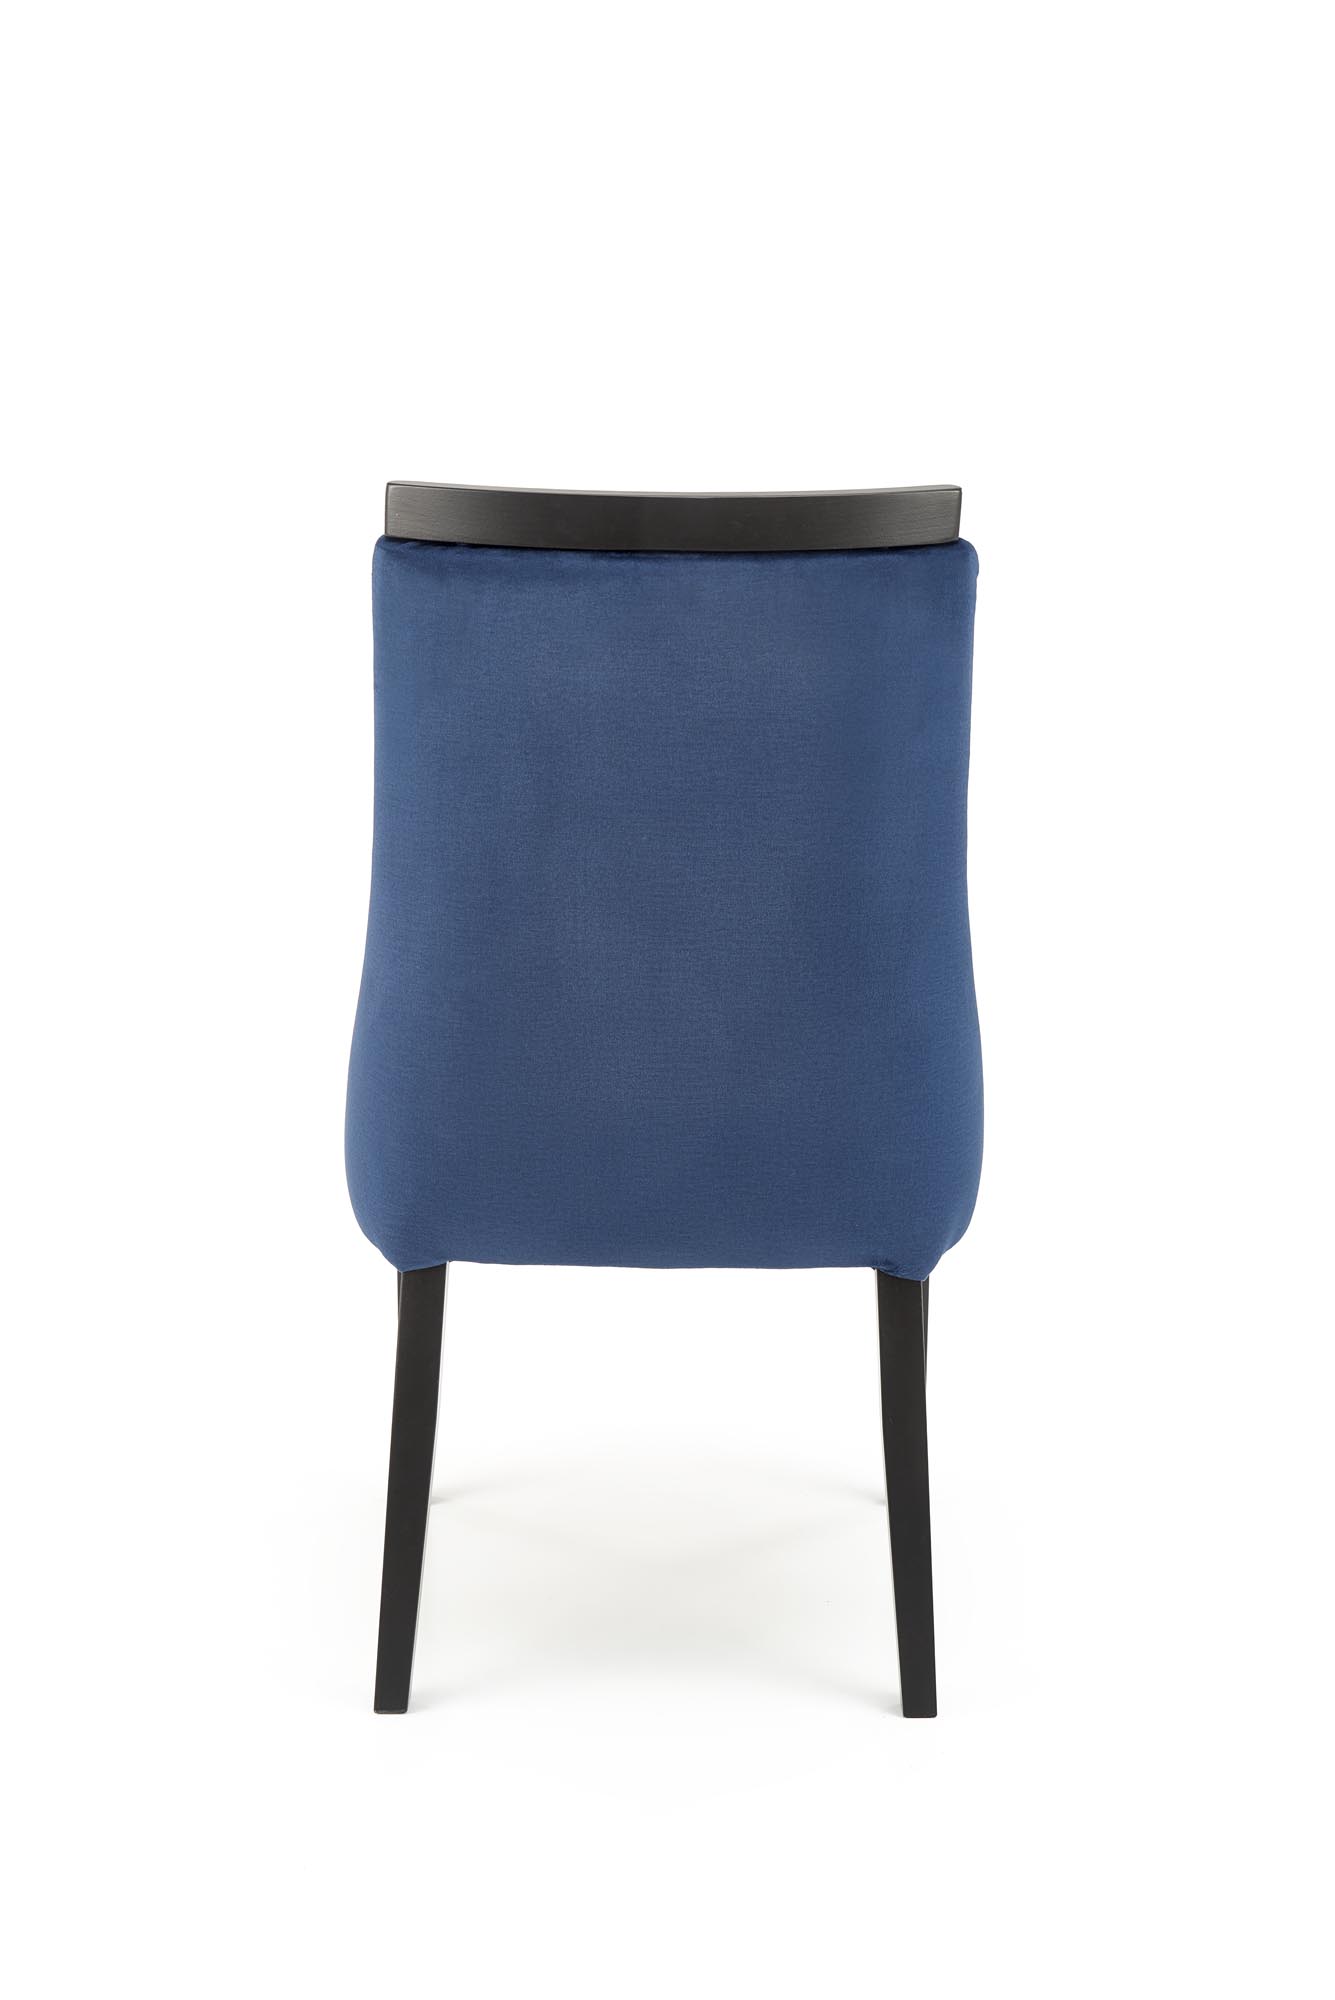 Scaun tapițat ROYAL - Negru / tap: MONOLITH 77 (albastru) Židle čalouněné royal - Černý / Námořnická modrá